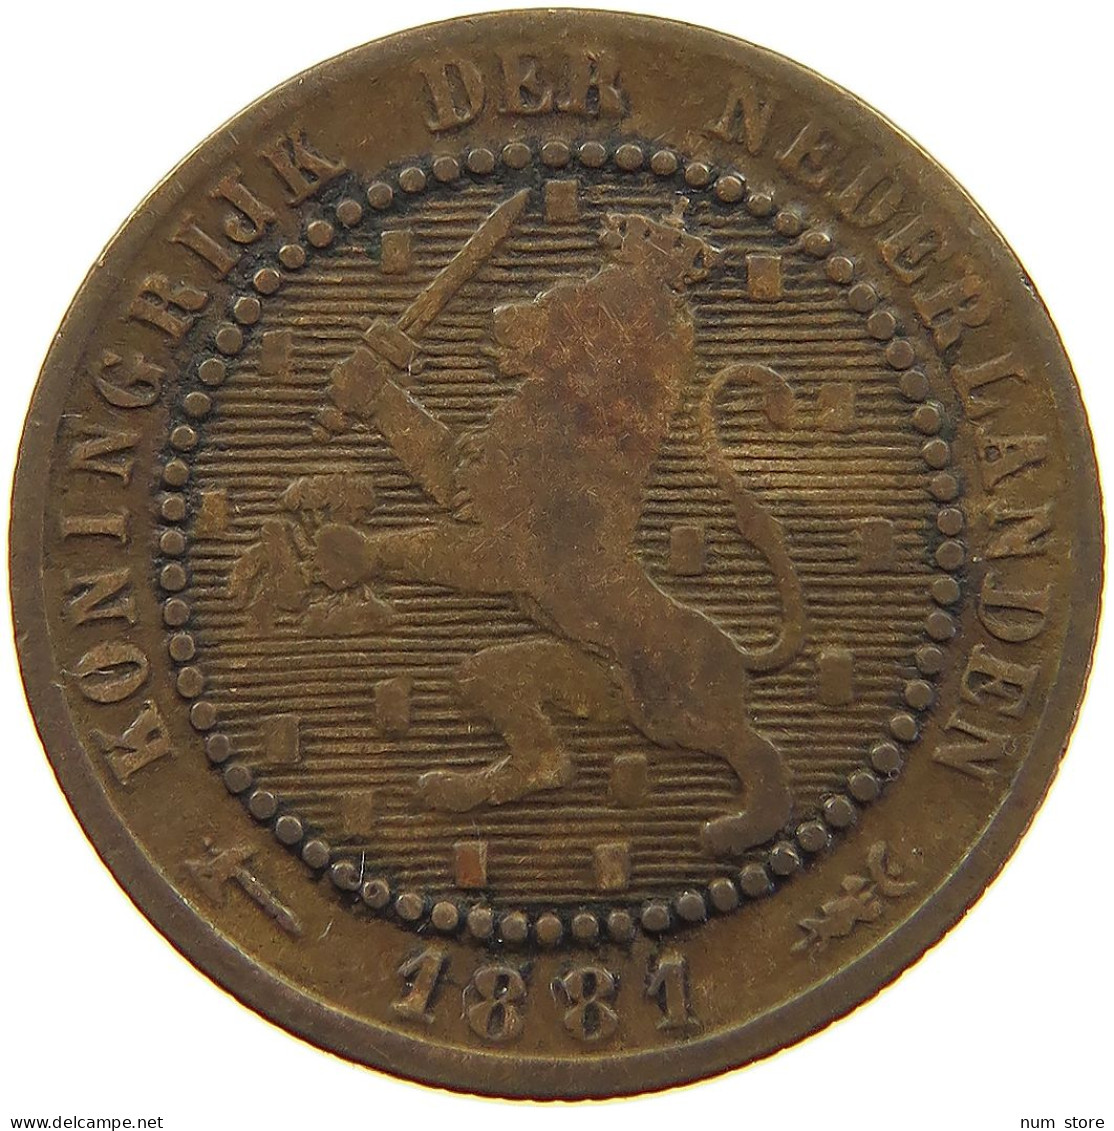 NETHERLANDS 1 CENT 1881 #a013 0229 - 1849-1890 : Willem III